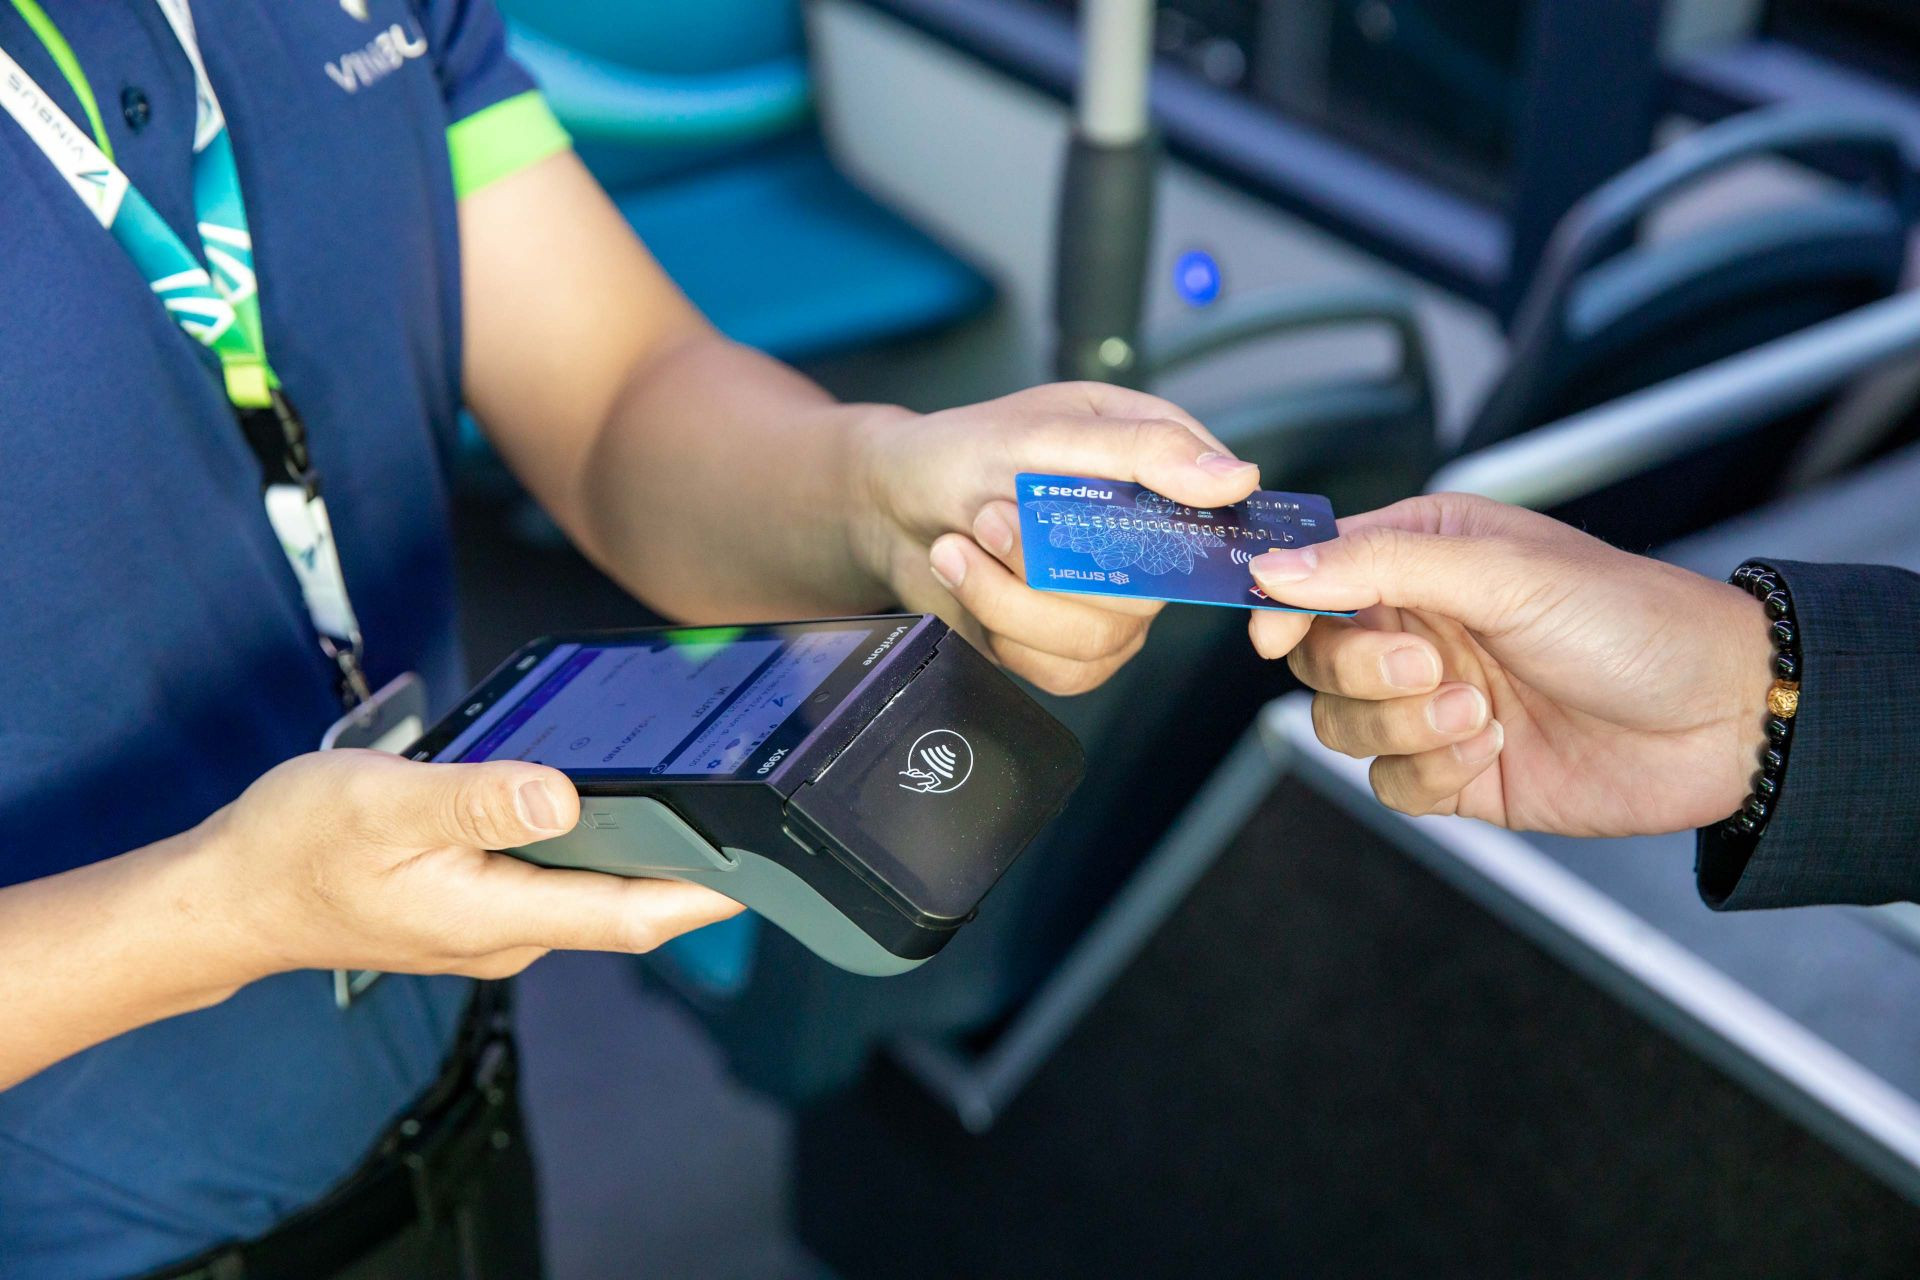 người dân Thủ đô lần đầu tiên được trải nghiệm hình thức thẻ, vé điện tử trên các tuyến xe buýt điện